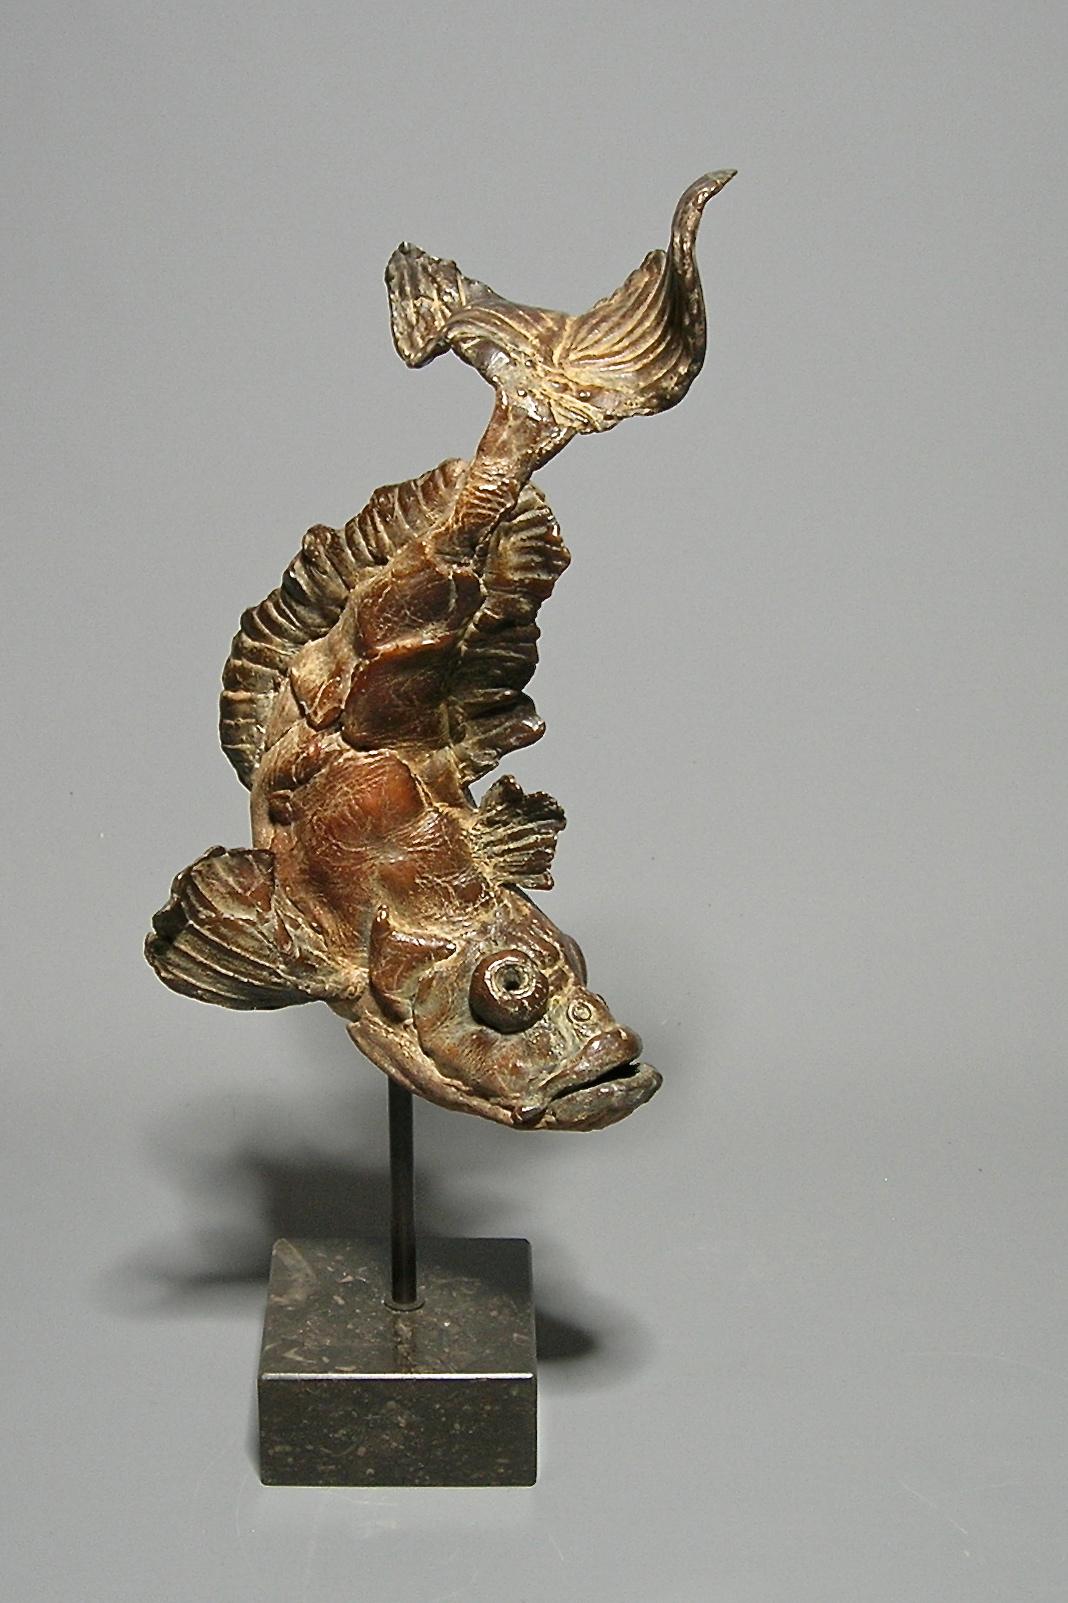 Pieter Vanden Daele Figurative Sculpture - Pietro Fish Bronze Sculpture Animal Water In Stock 